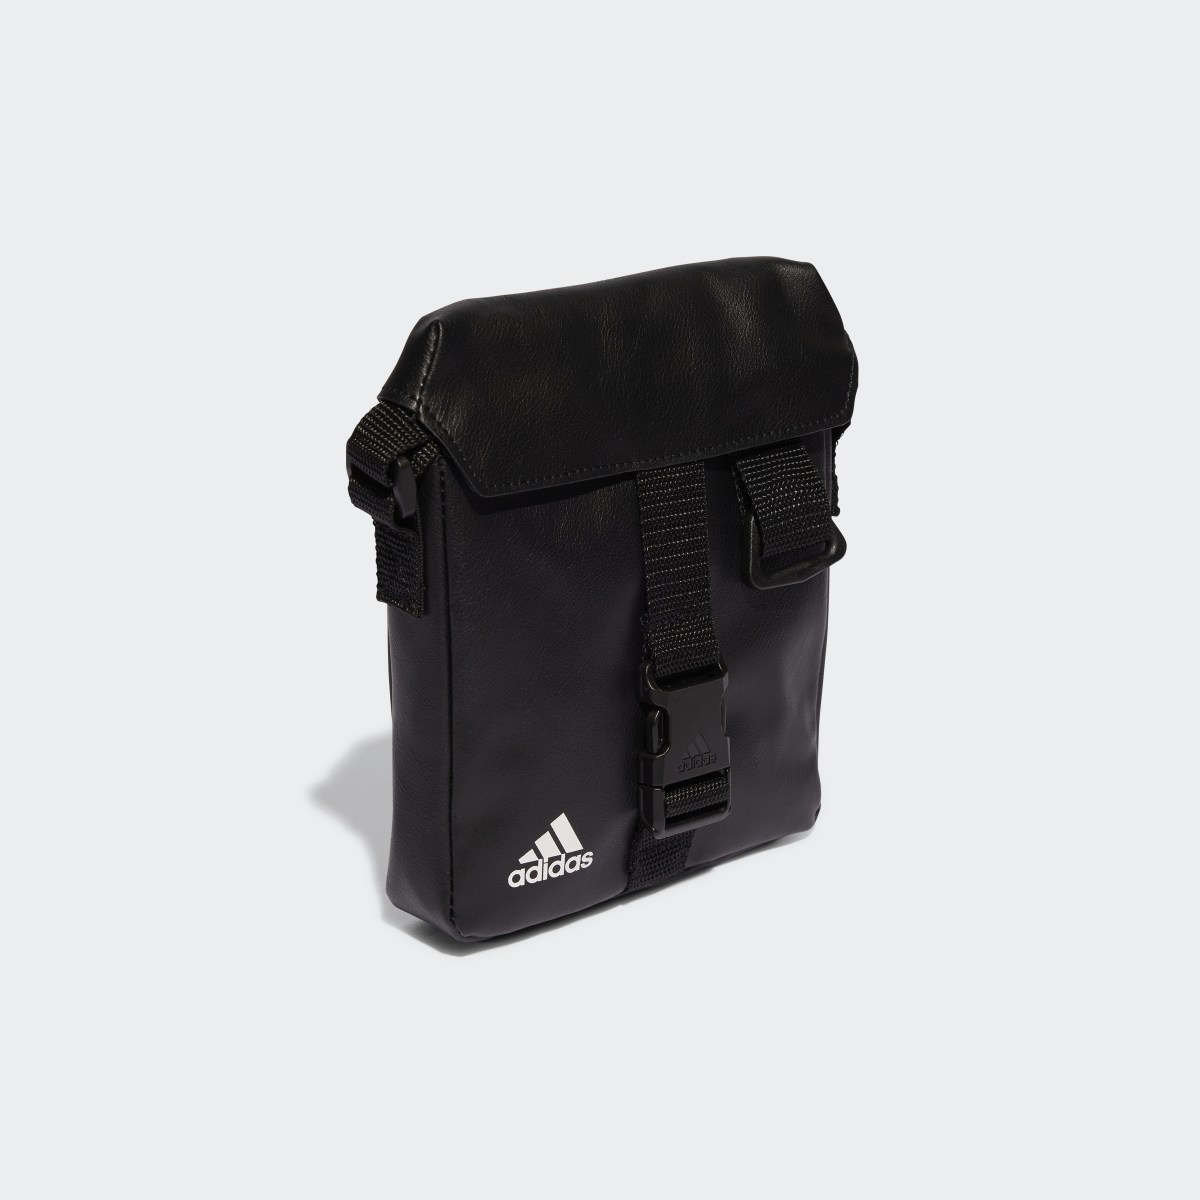 Adidas Essentials Small Bag. 4